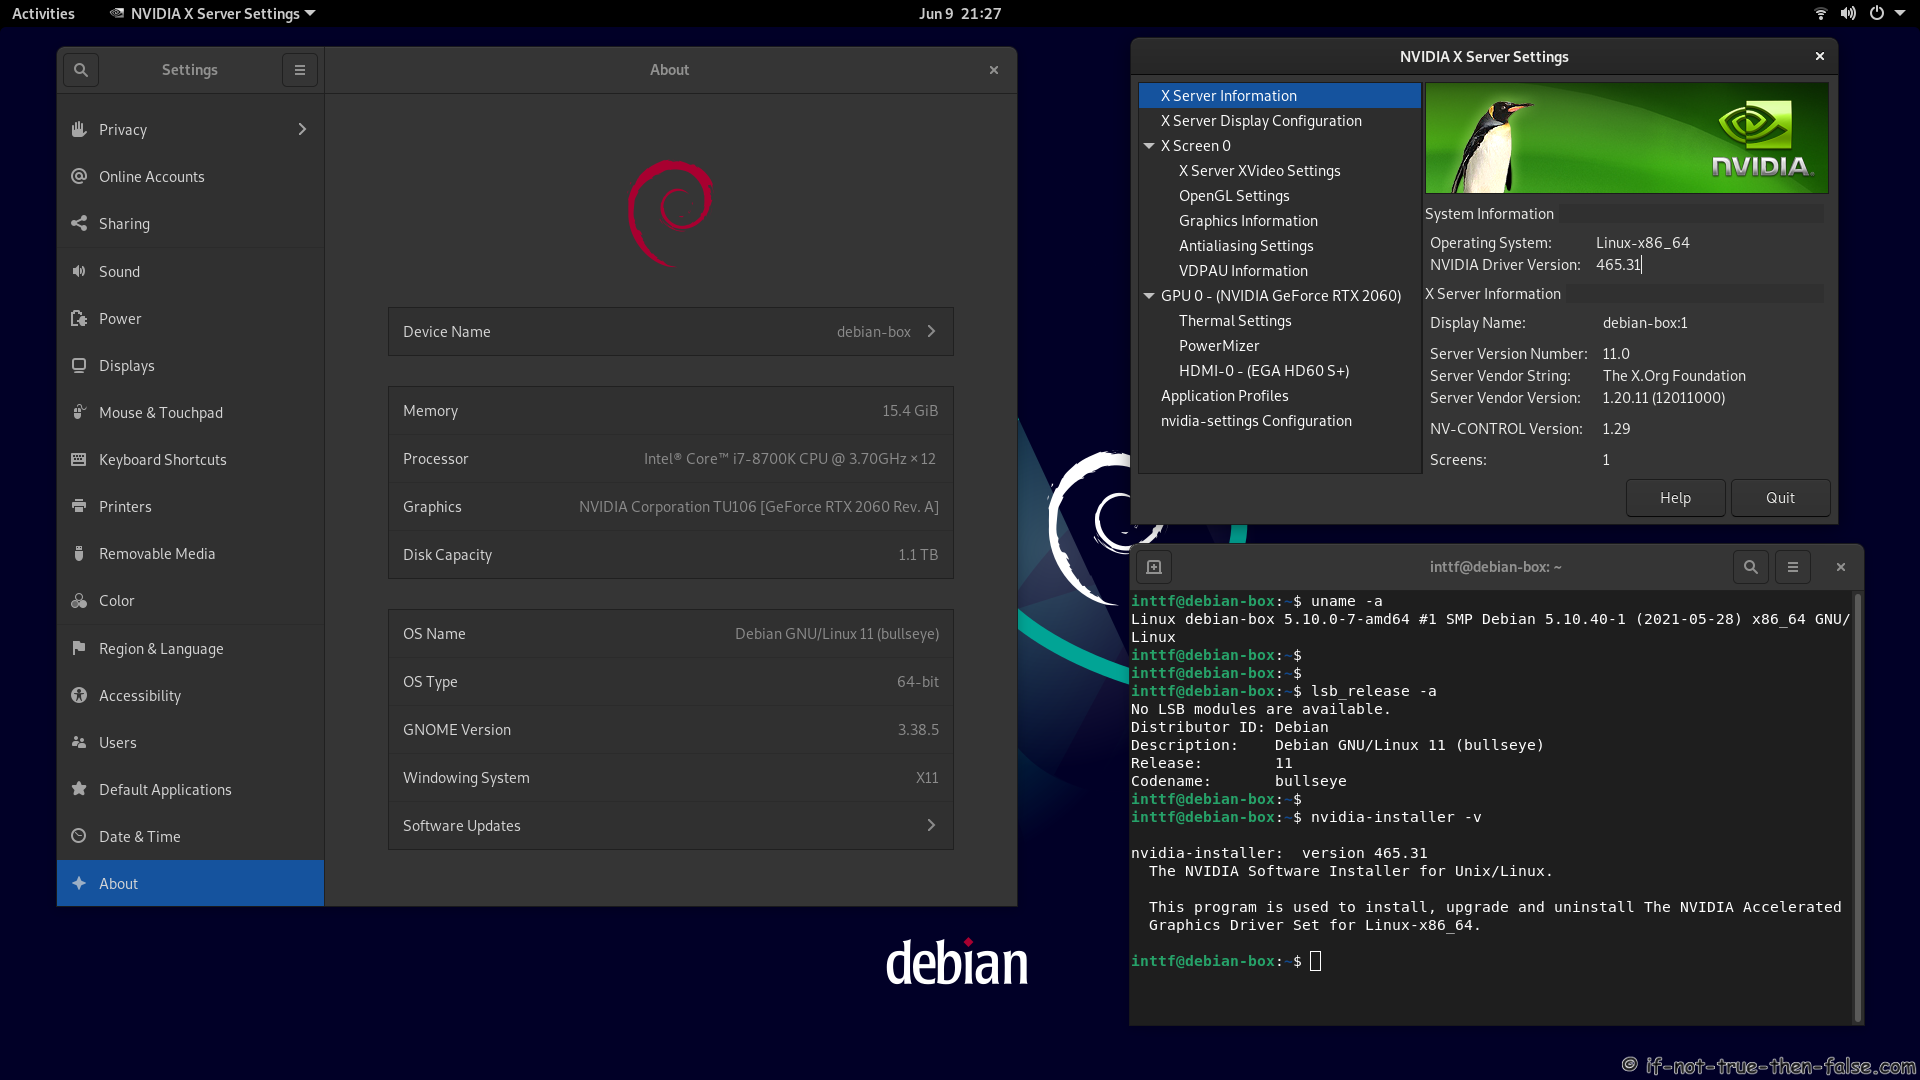 NVIDIA 465.31 Running on Debian Bullseye 11 Gnome 3.38.5